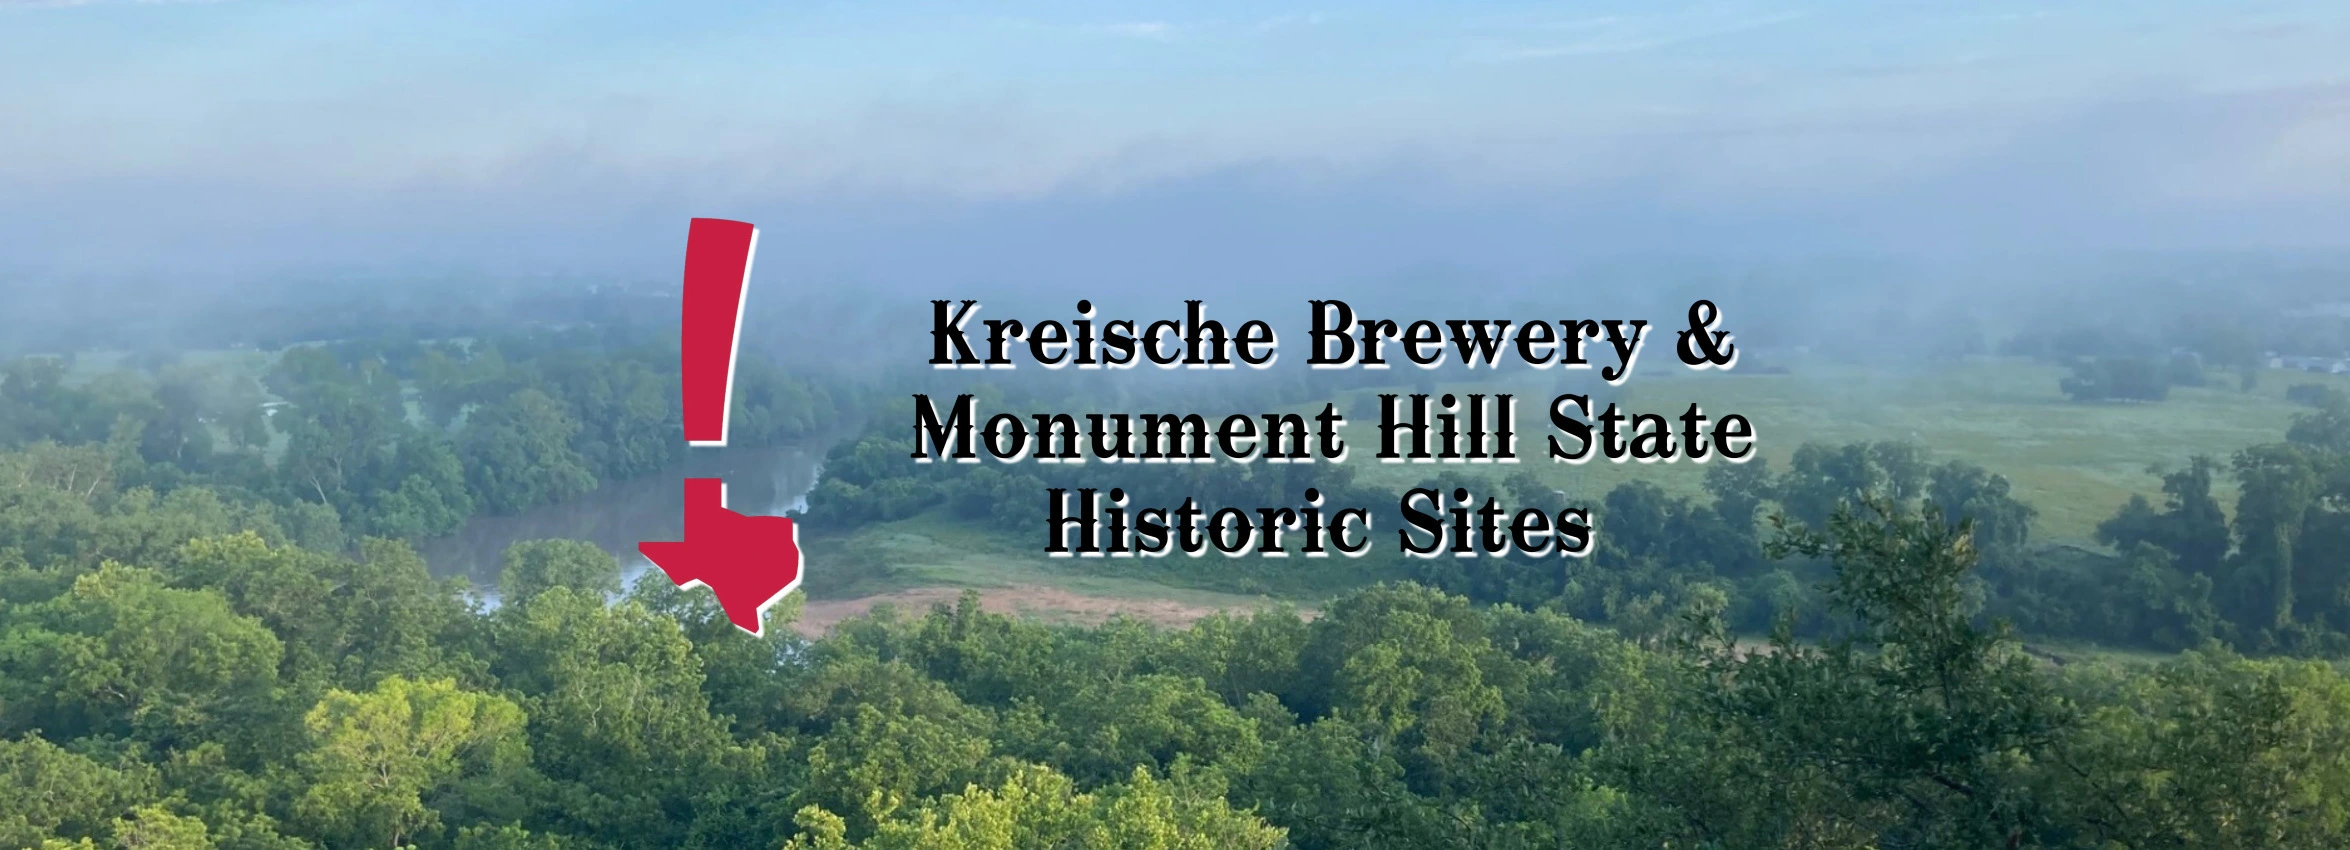 Kreische-Brewery-Monument-Hill-SHS_desktop_ET